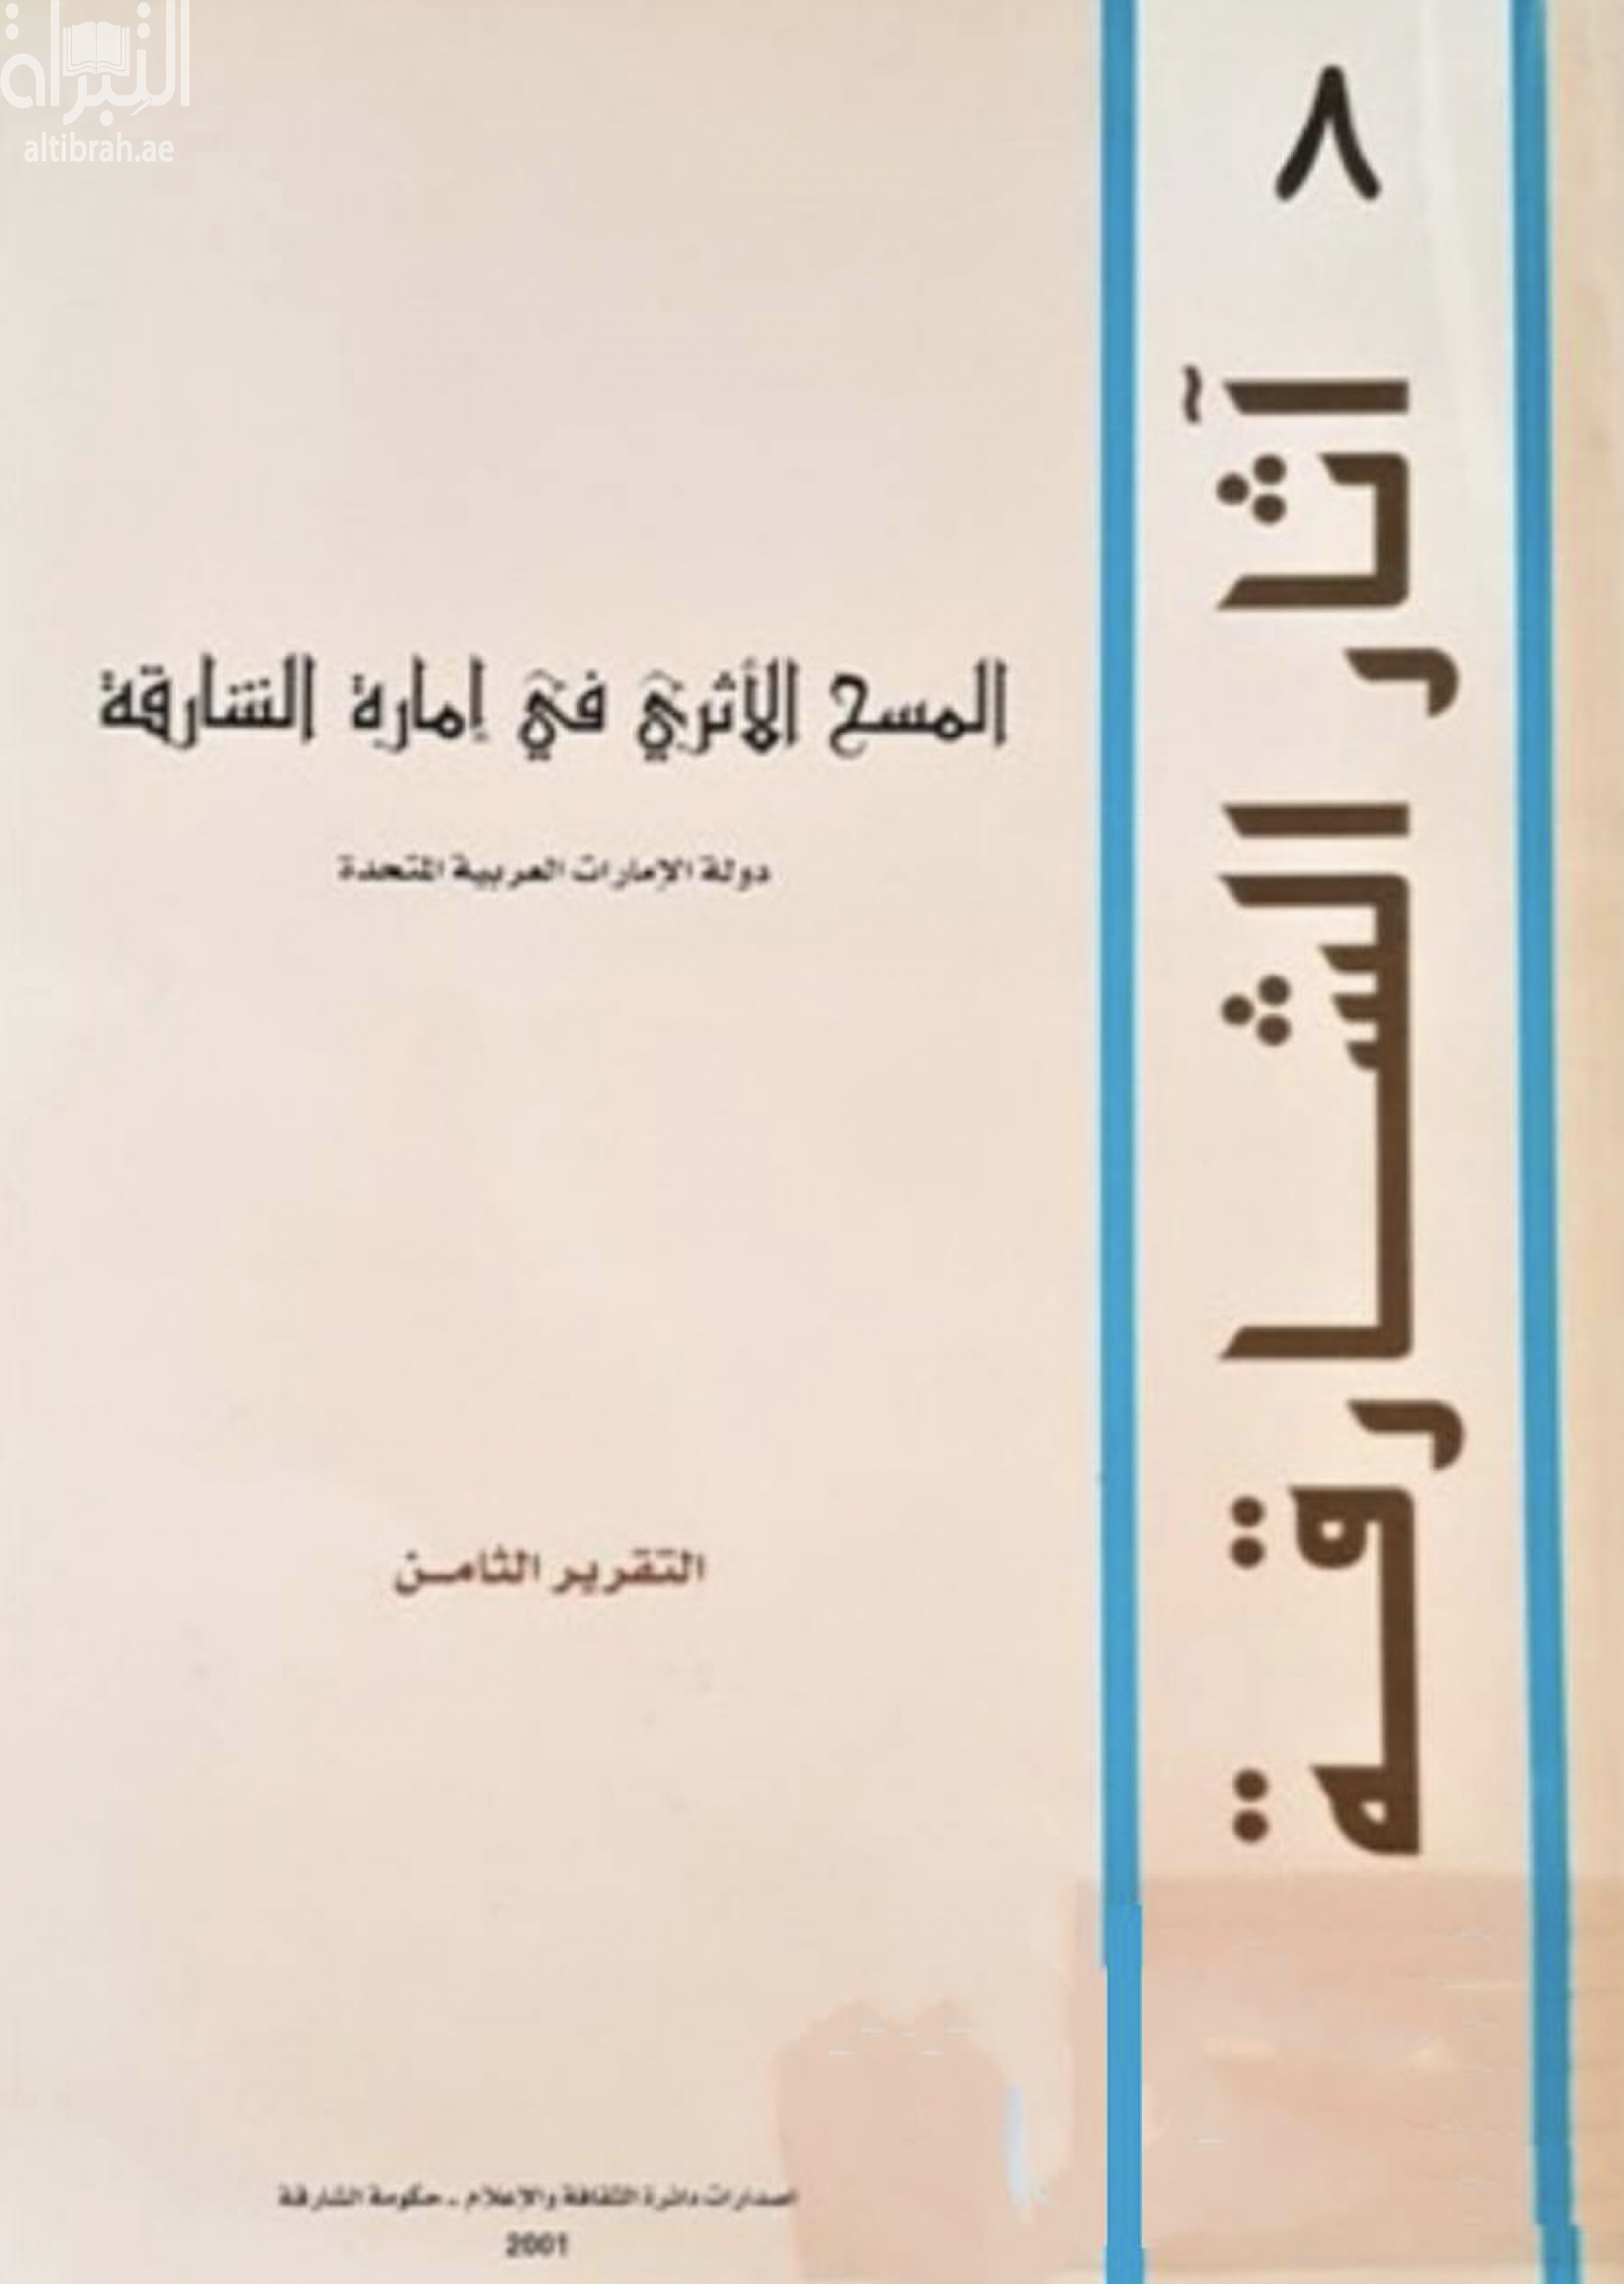 المسح الأثري في إمارة الشارقة - دولة الإمارات العربية المتحدة : التقرير الثامن